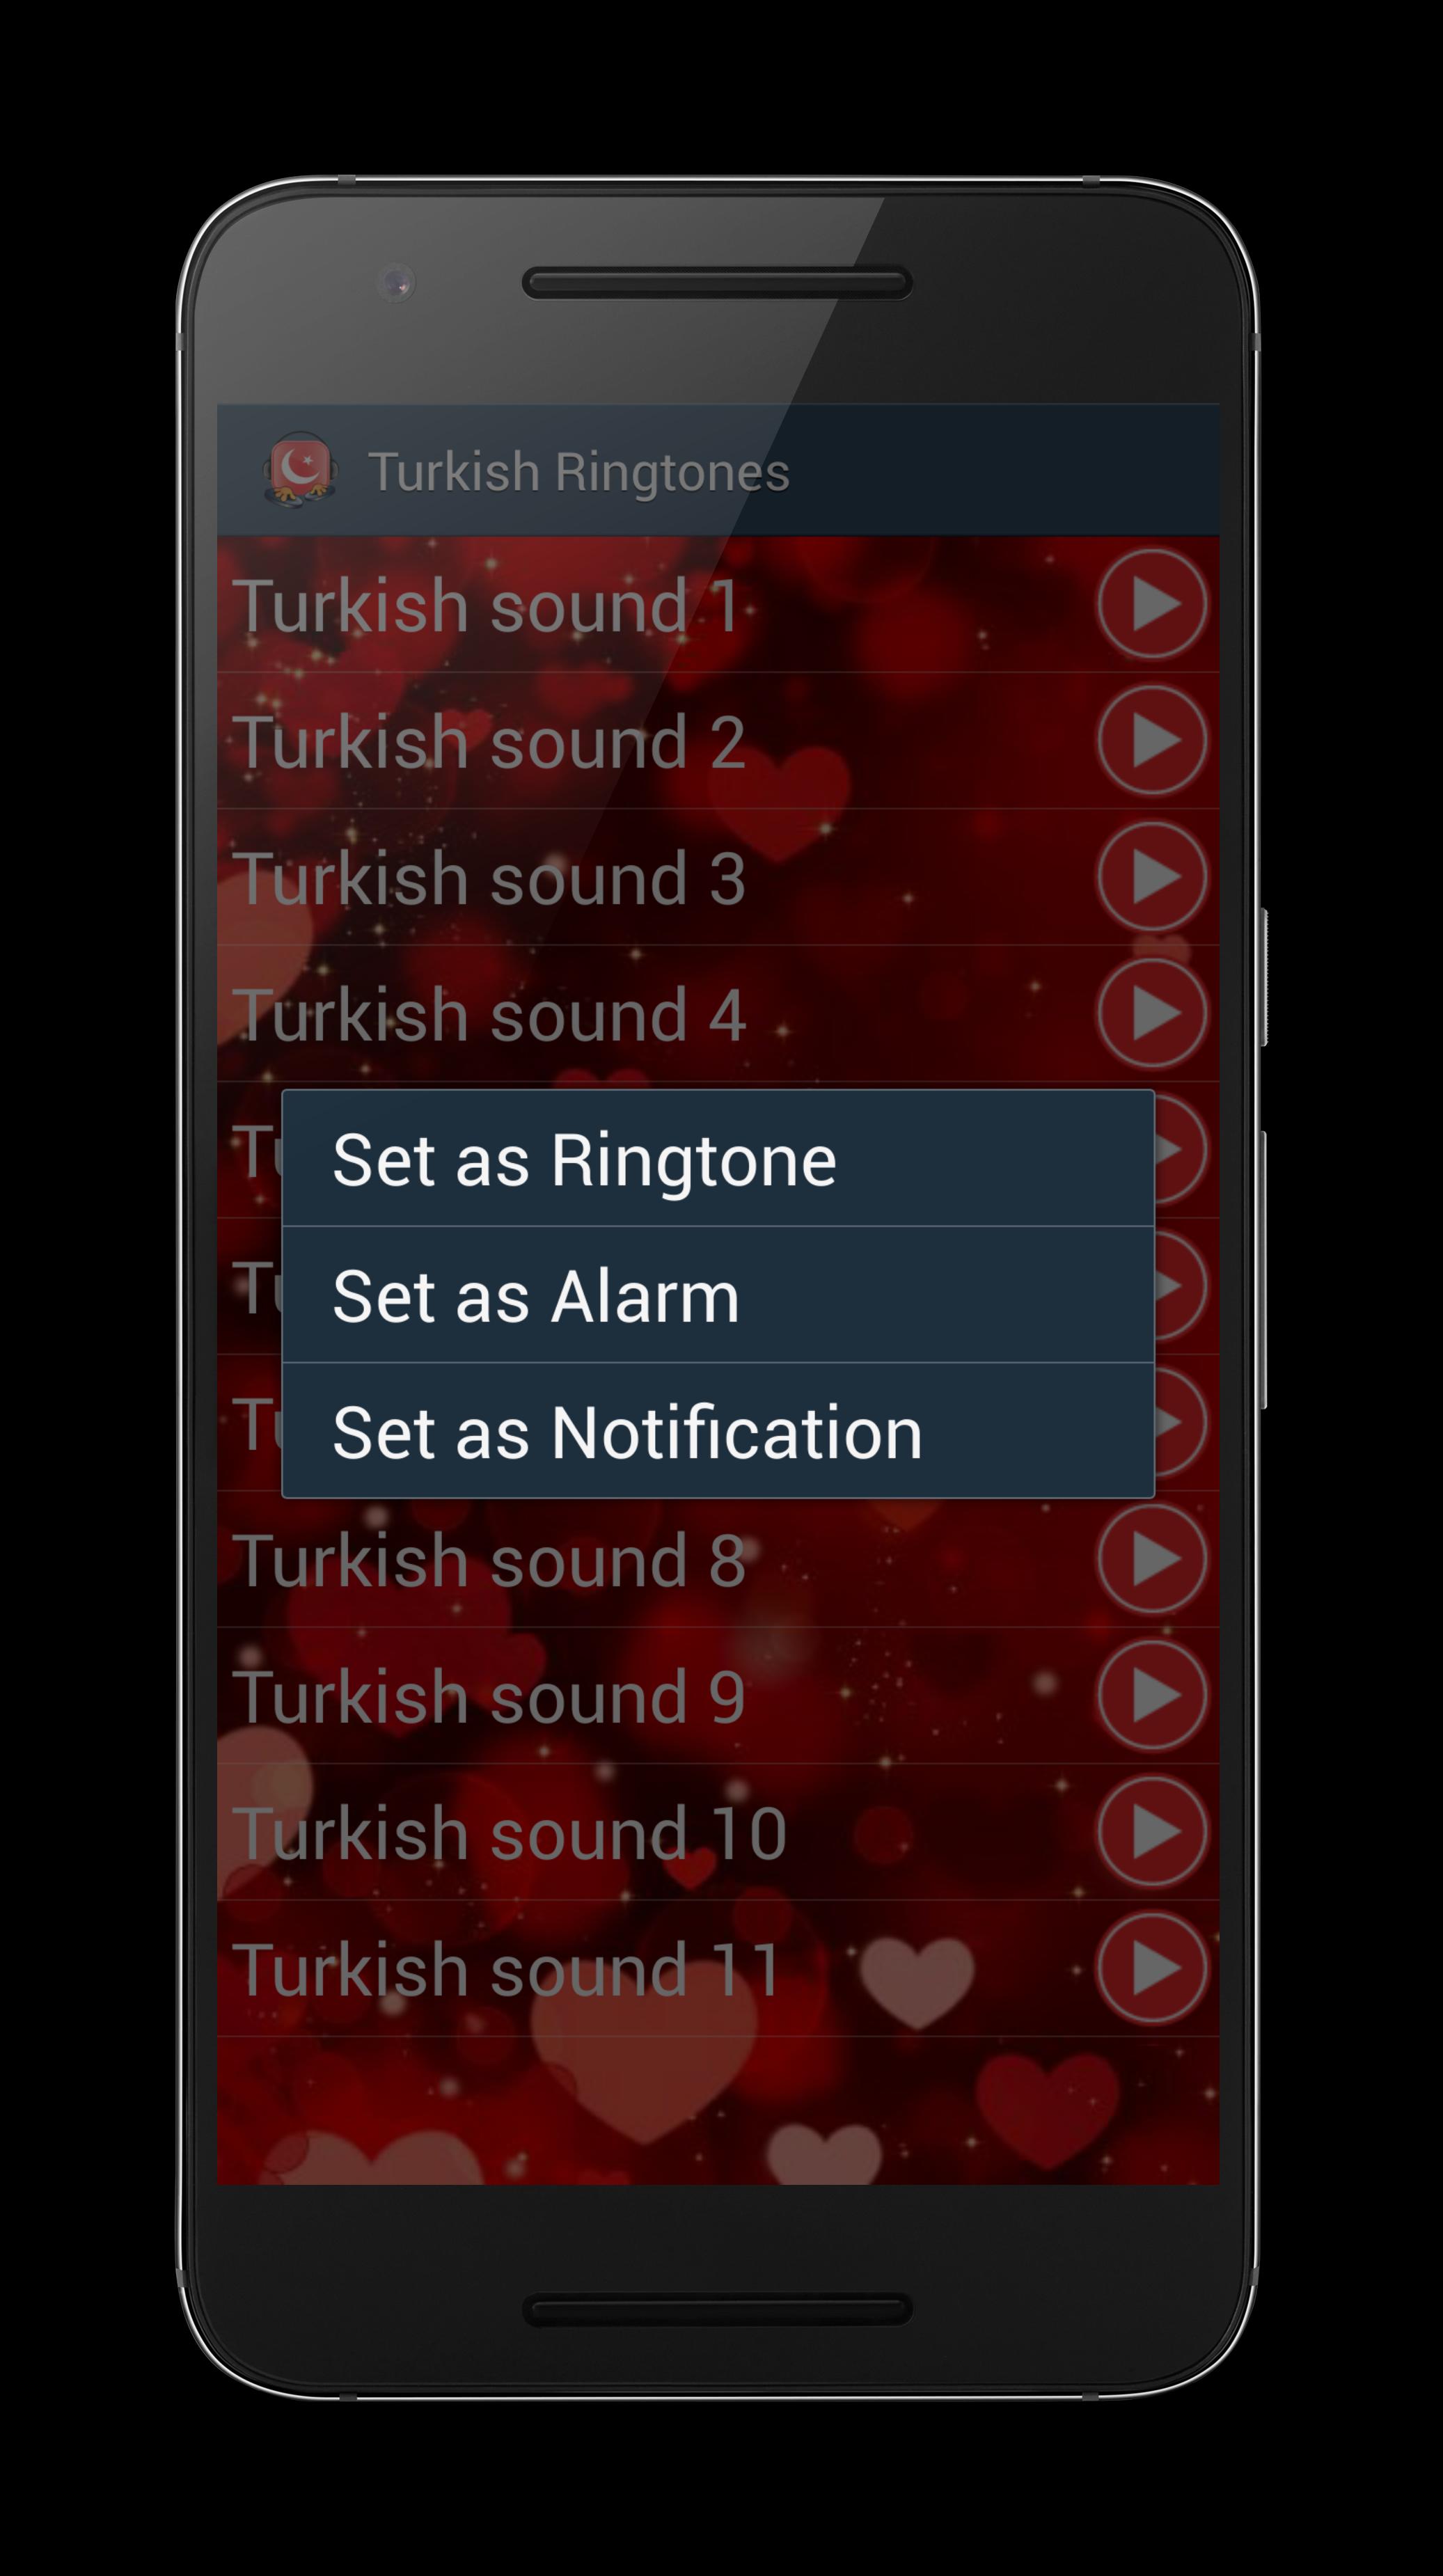 Туркиш рингтон. Turkish Ringtones. Турецкие песни на звонок. Турецкие музыка для звонка. Турецкие мелодии на телефон